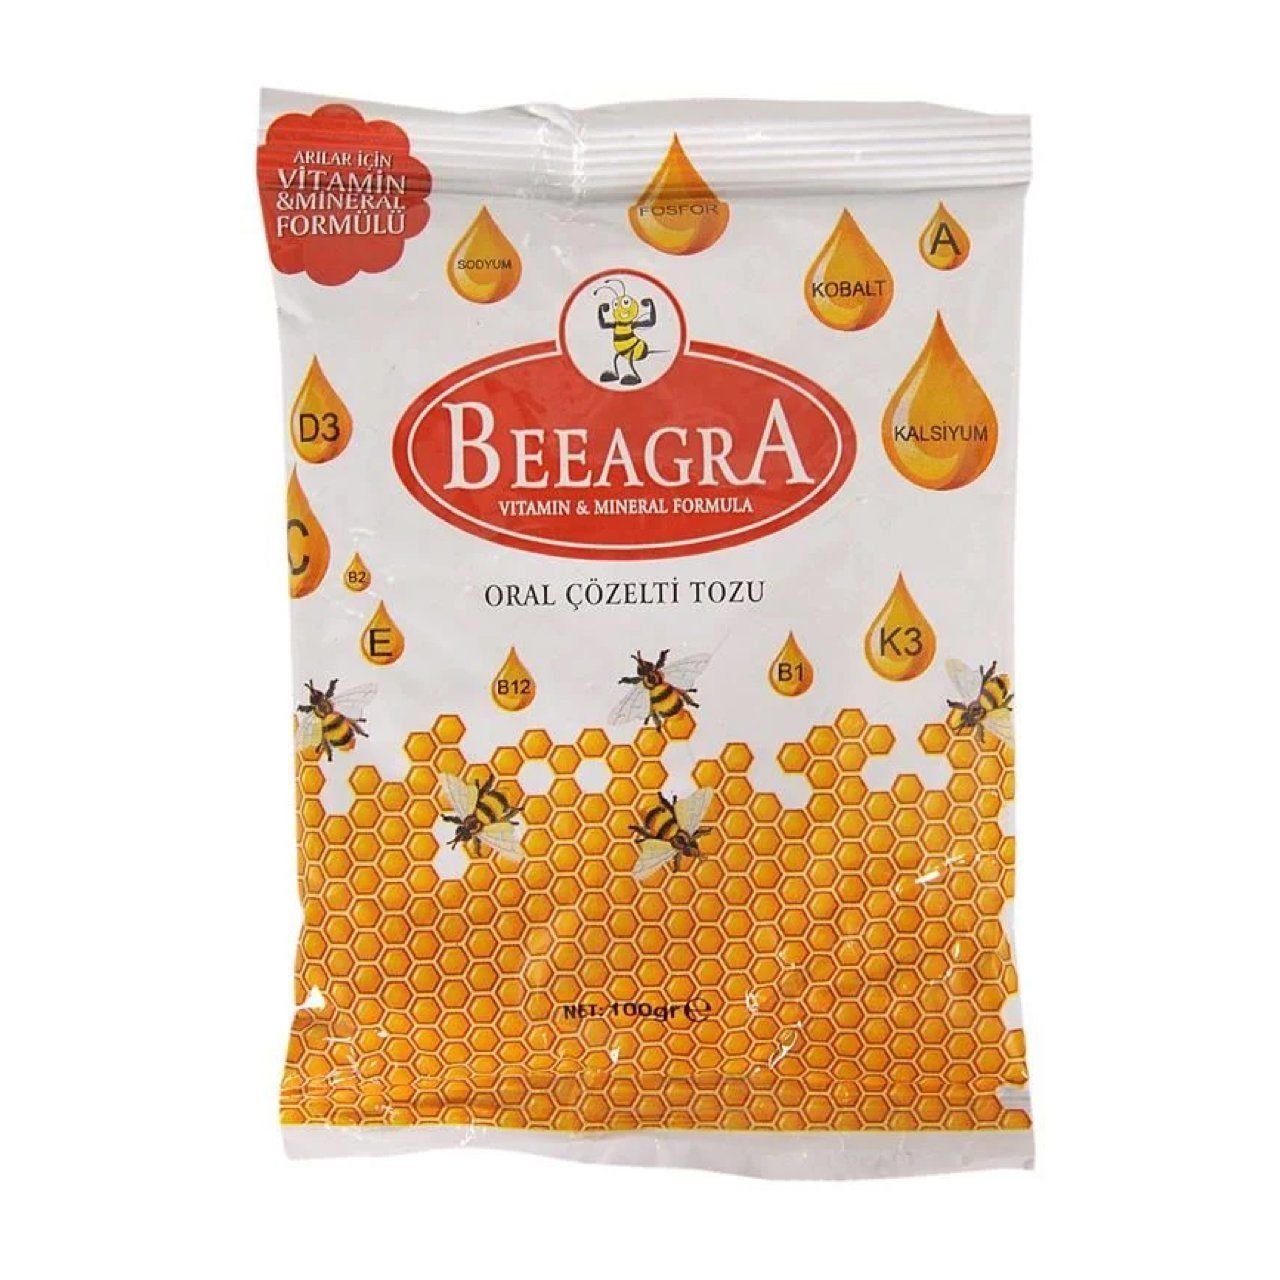 Beeagra - Arı Vitamini